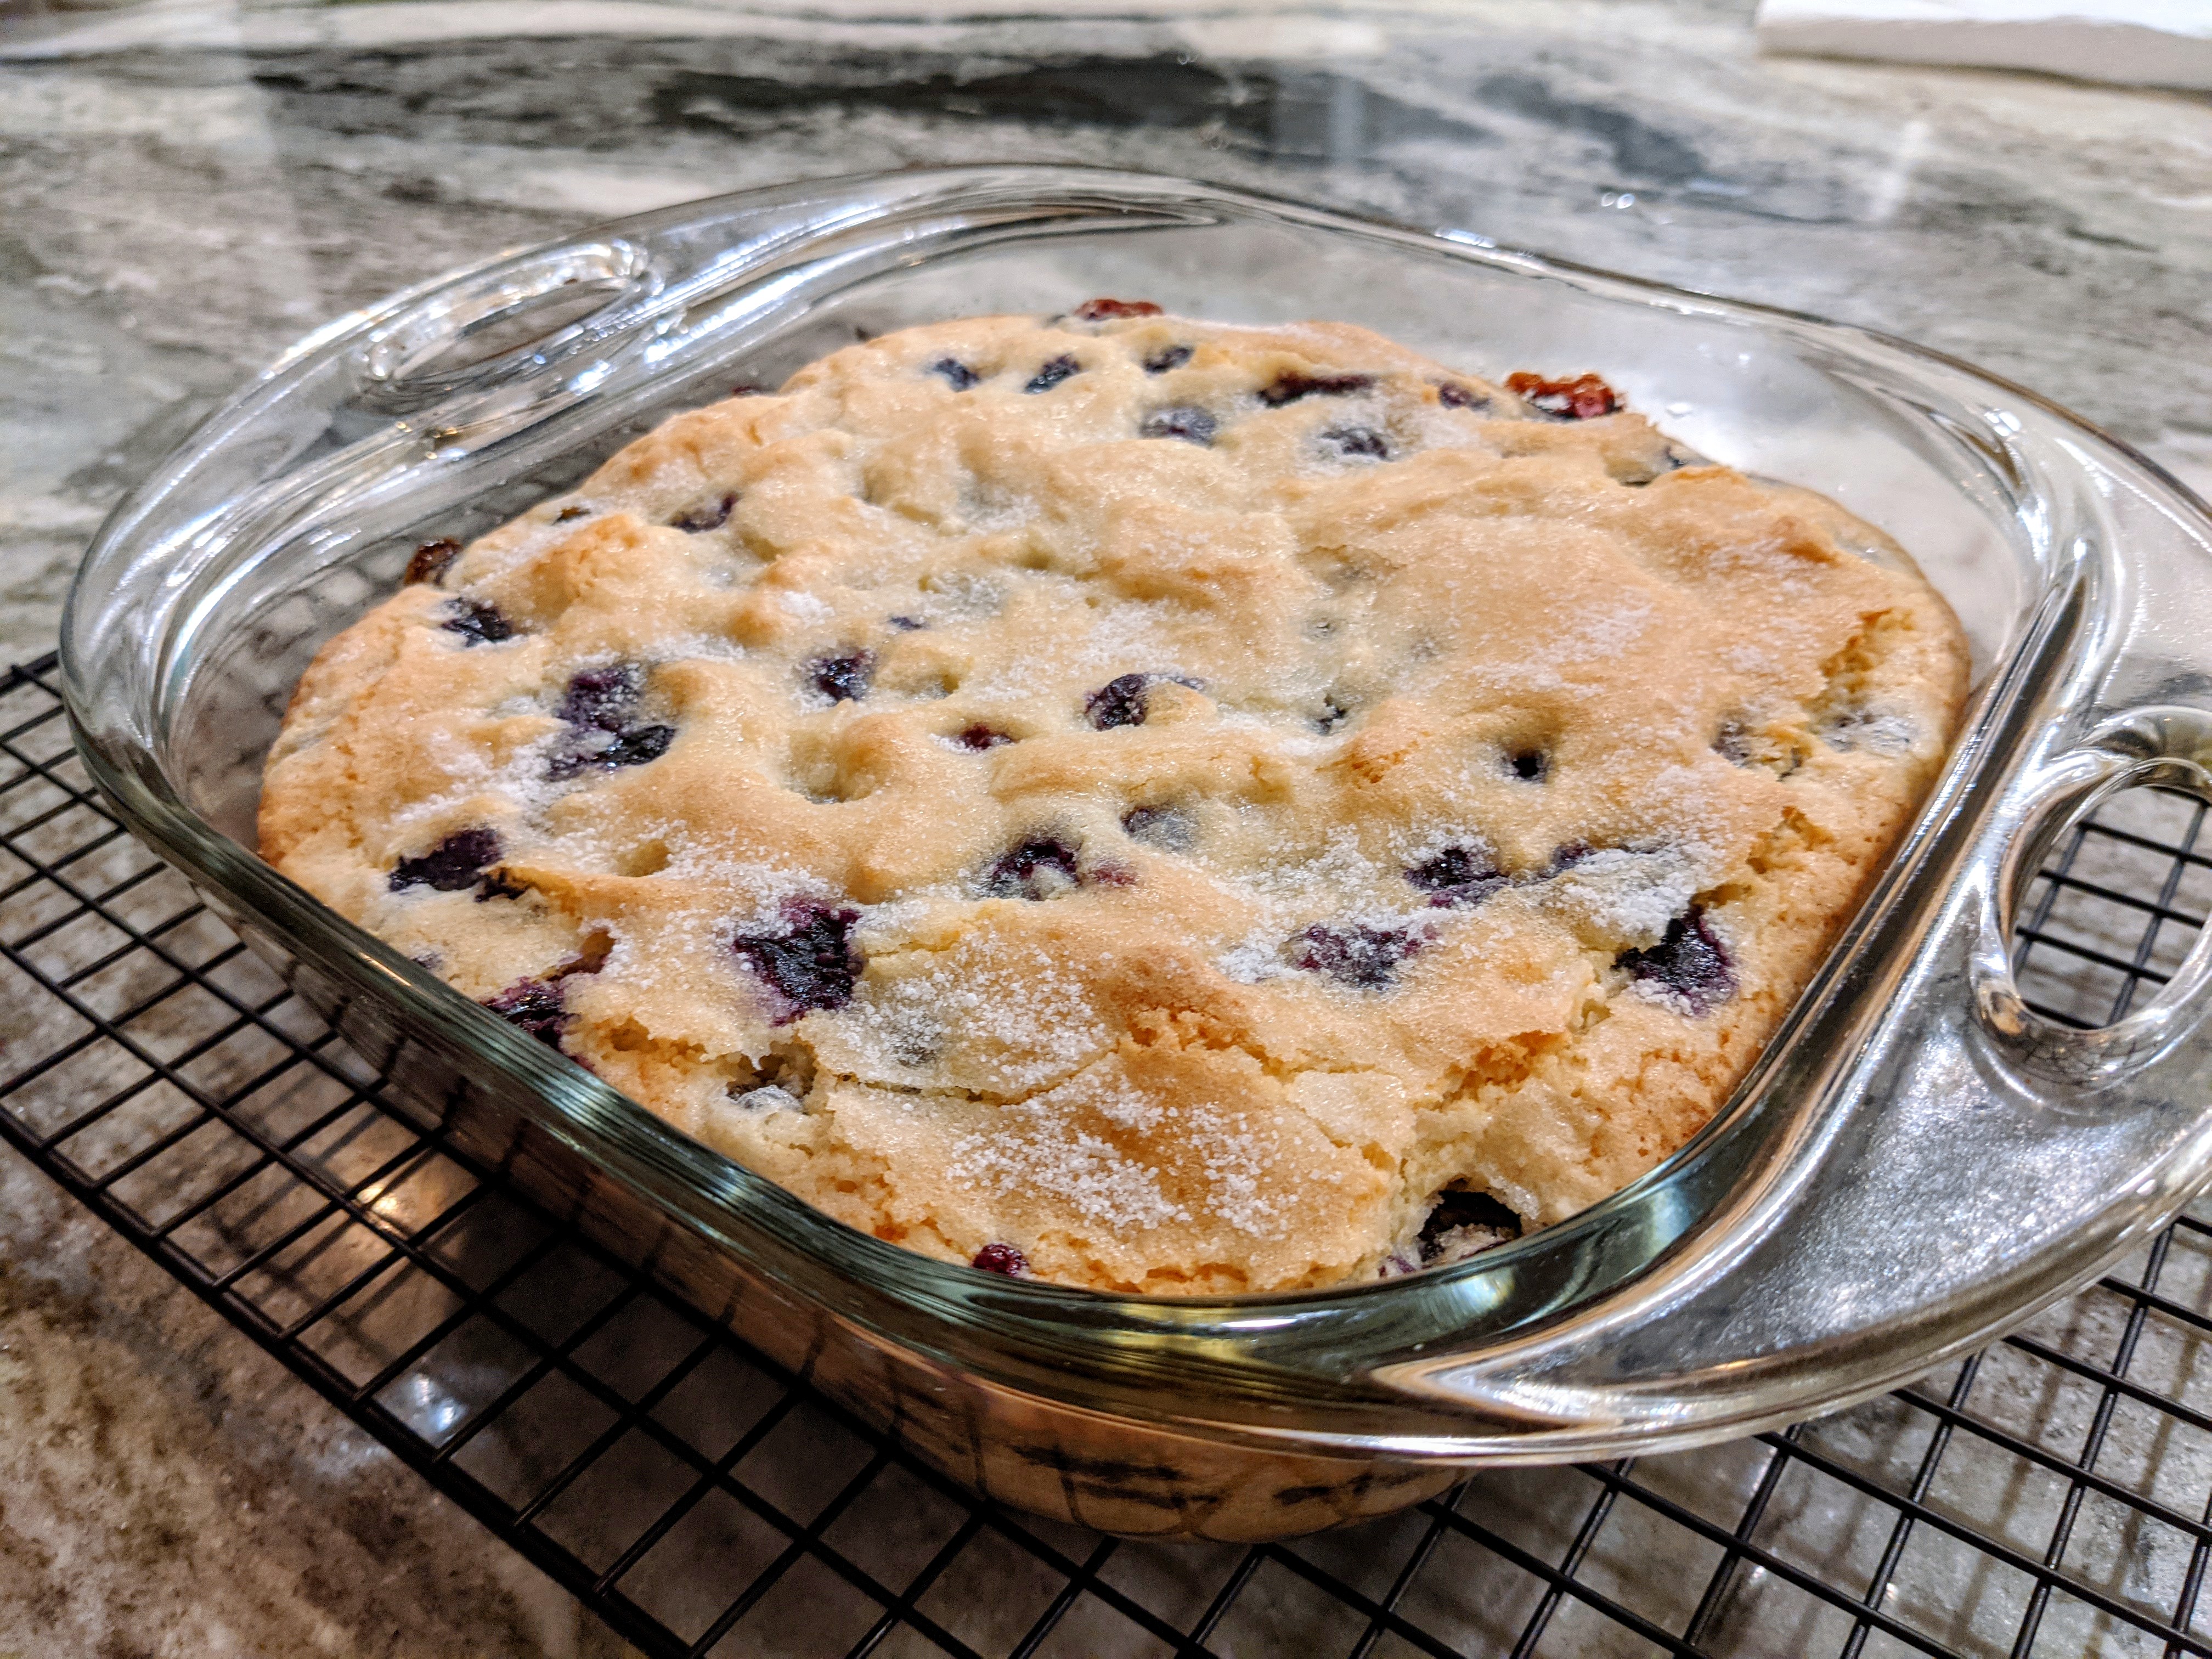 Photo of freshly baked Buttermilk Blueberry Breakfast Cake